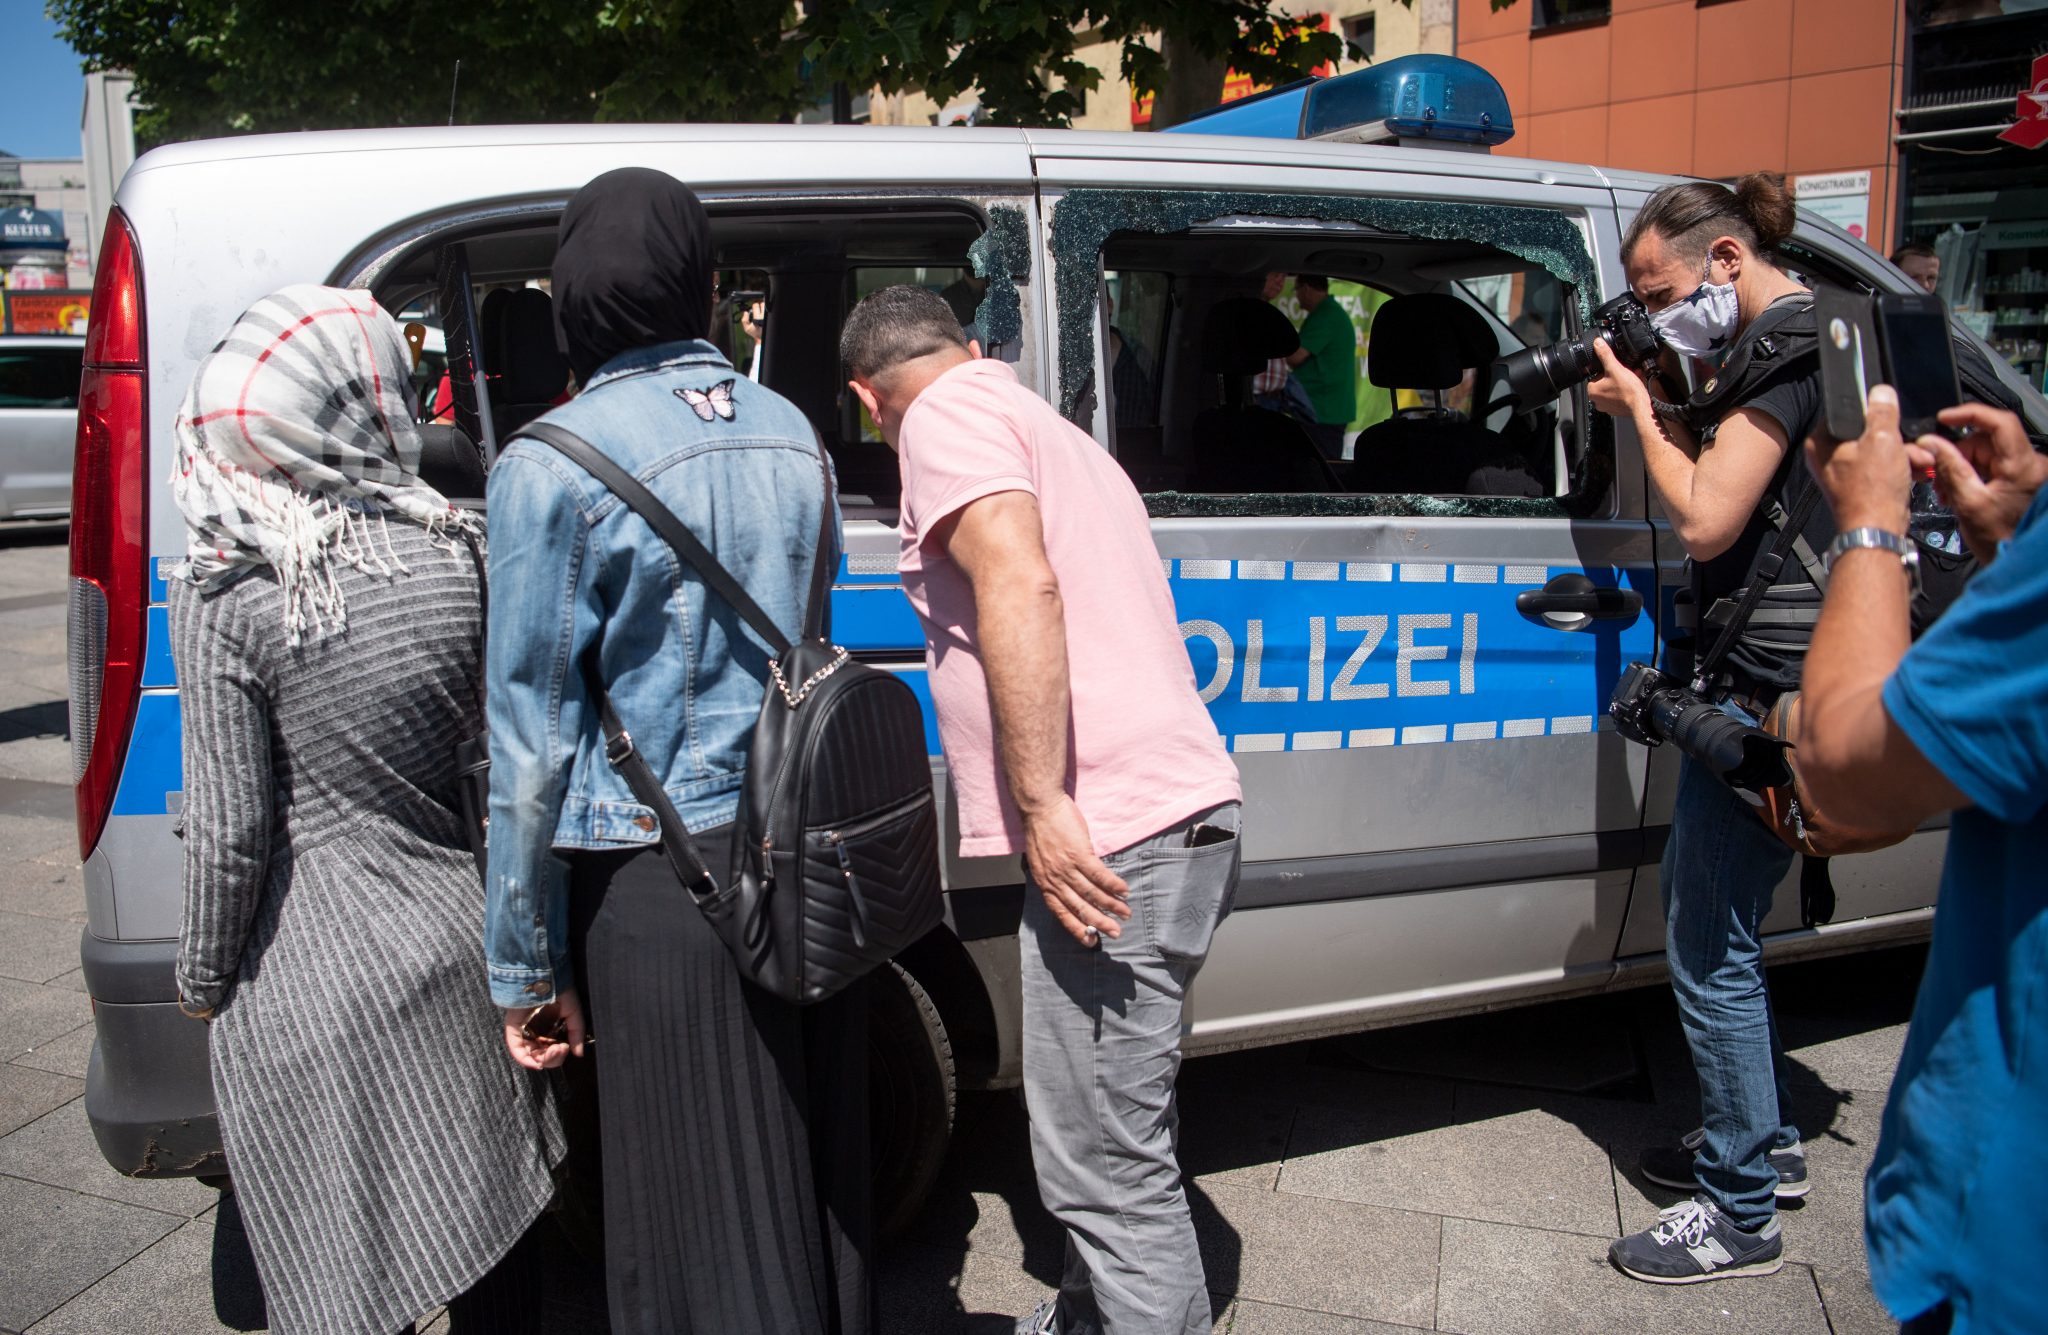 Passanten und Journalisten betrachten einen zerstörten Polizeiwagen nach den Stuttgarter Ausschreitungen Foto: picture alliance/Marijan Murat/dpa